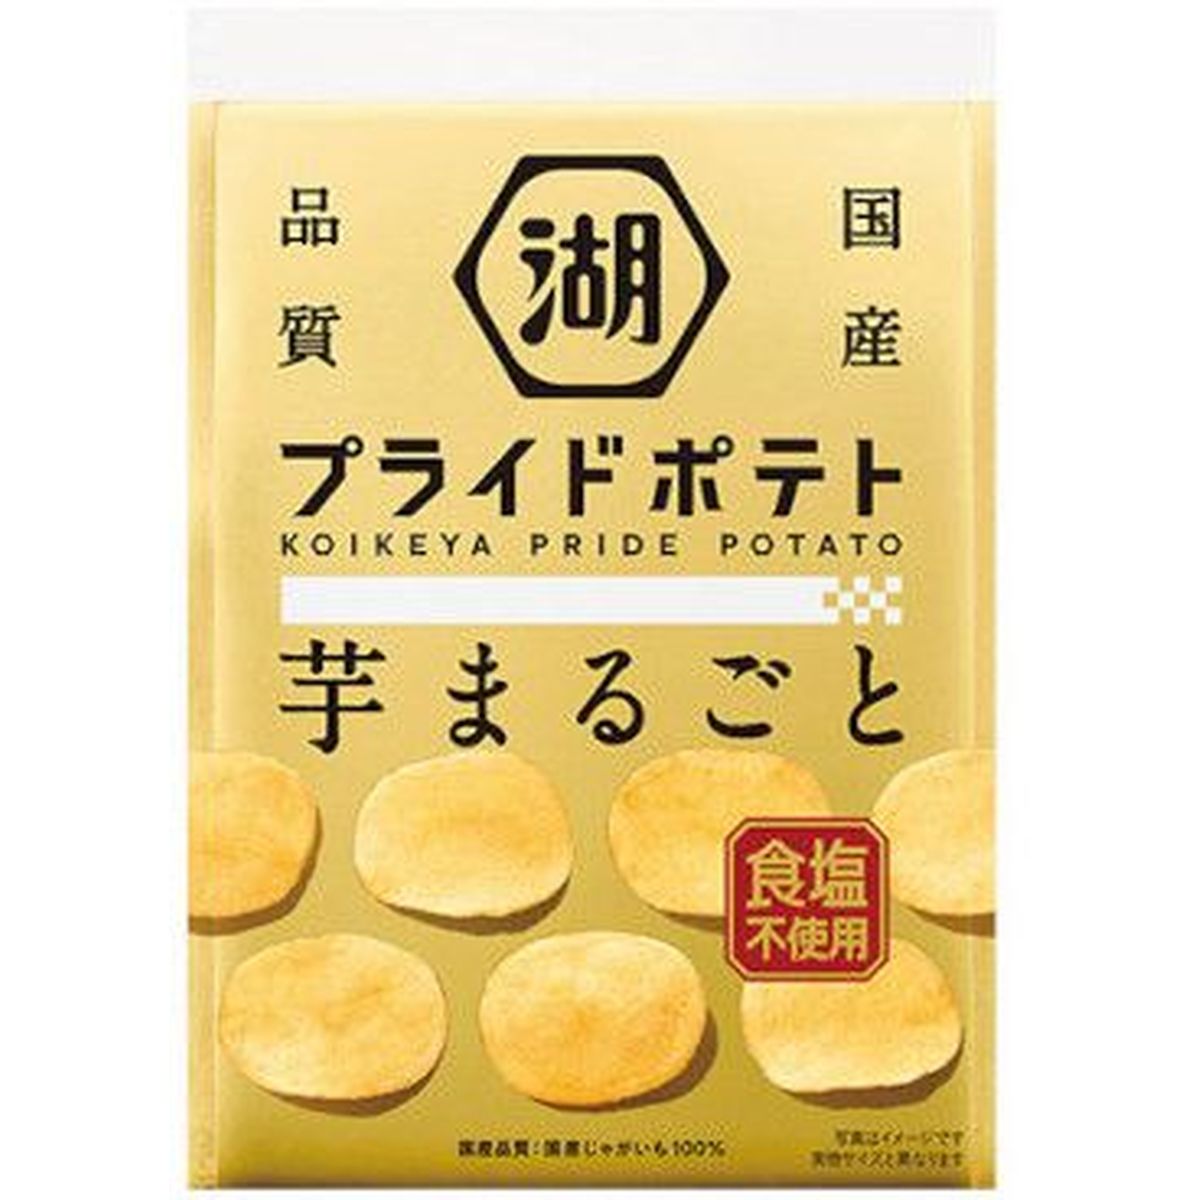 【12個入リ】湖池屋 PRIDEPOTATO 芋マルゴト 塩不使用 55g